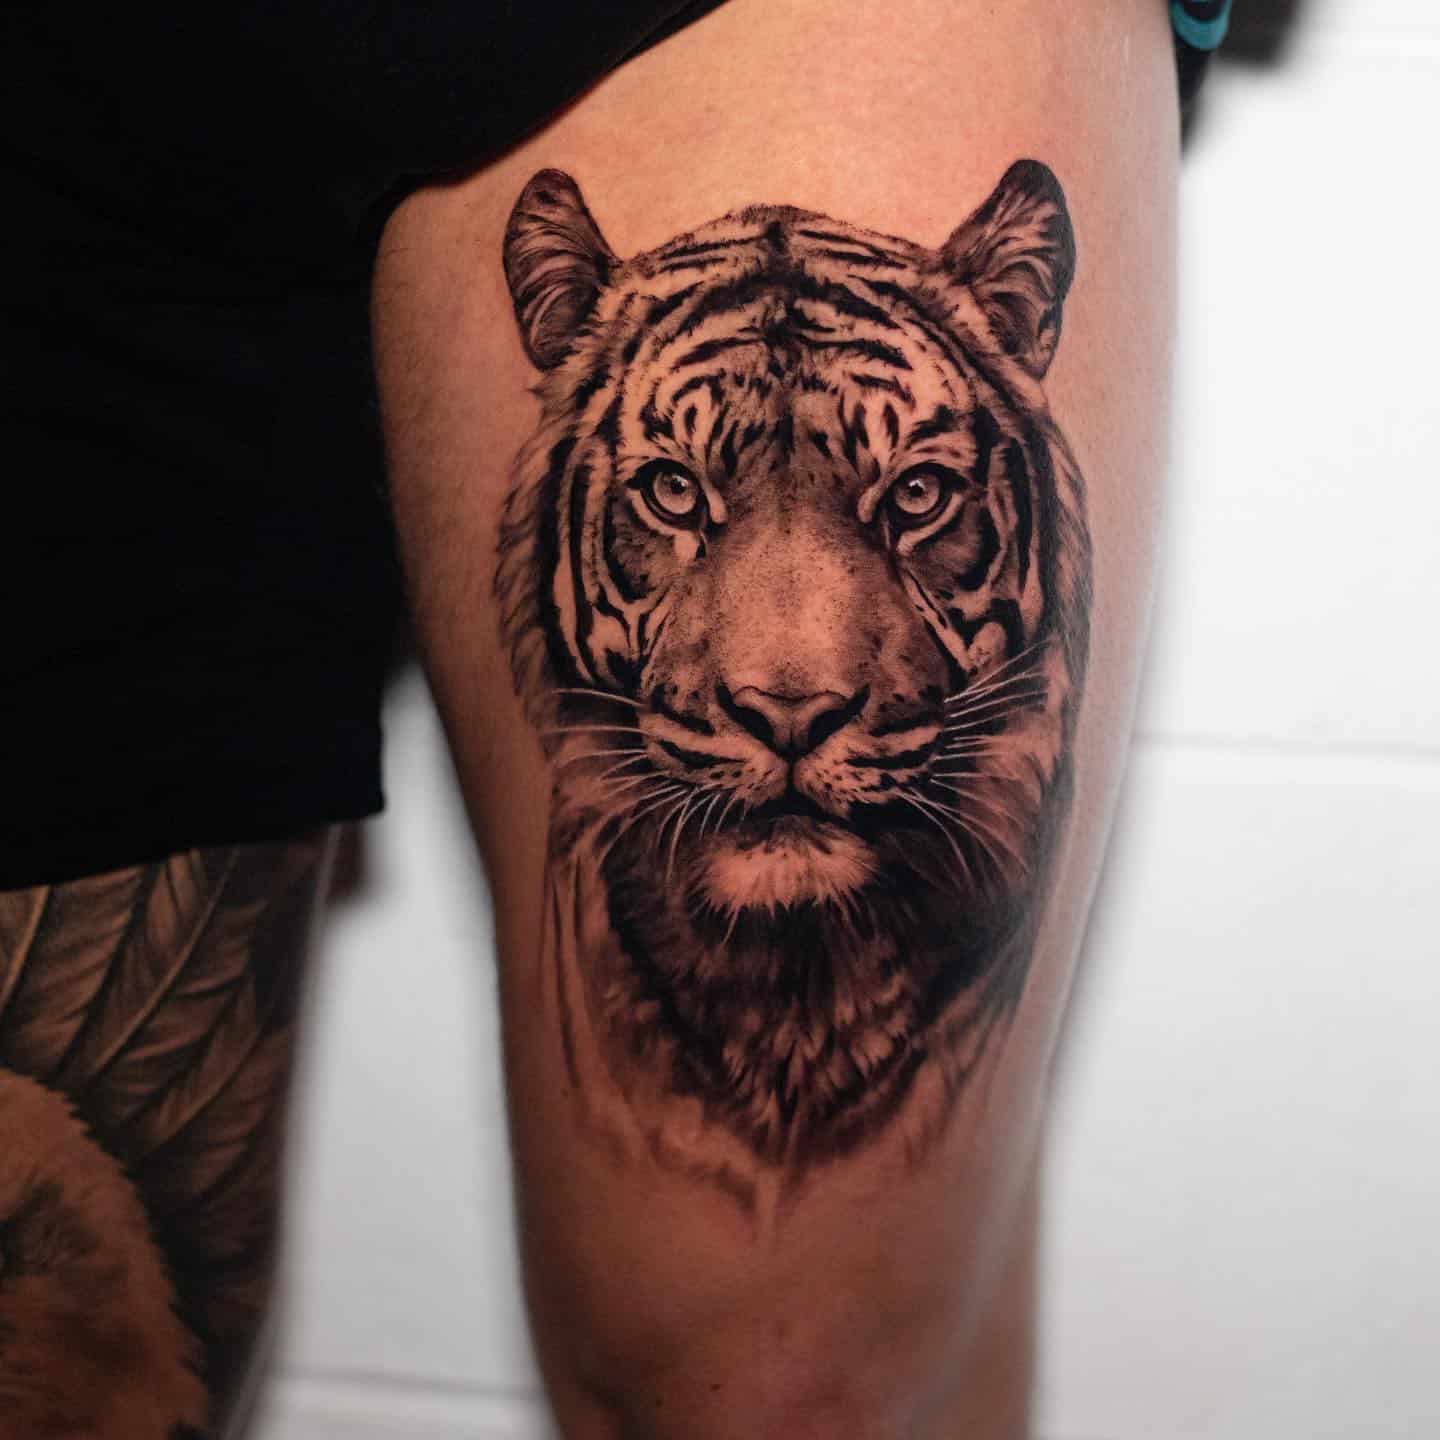 Tiger Tattoo Ideas 24